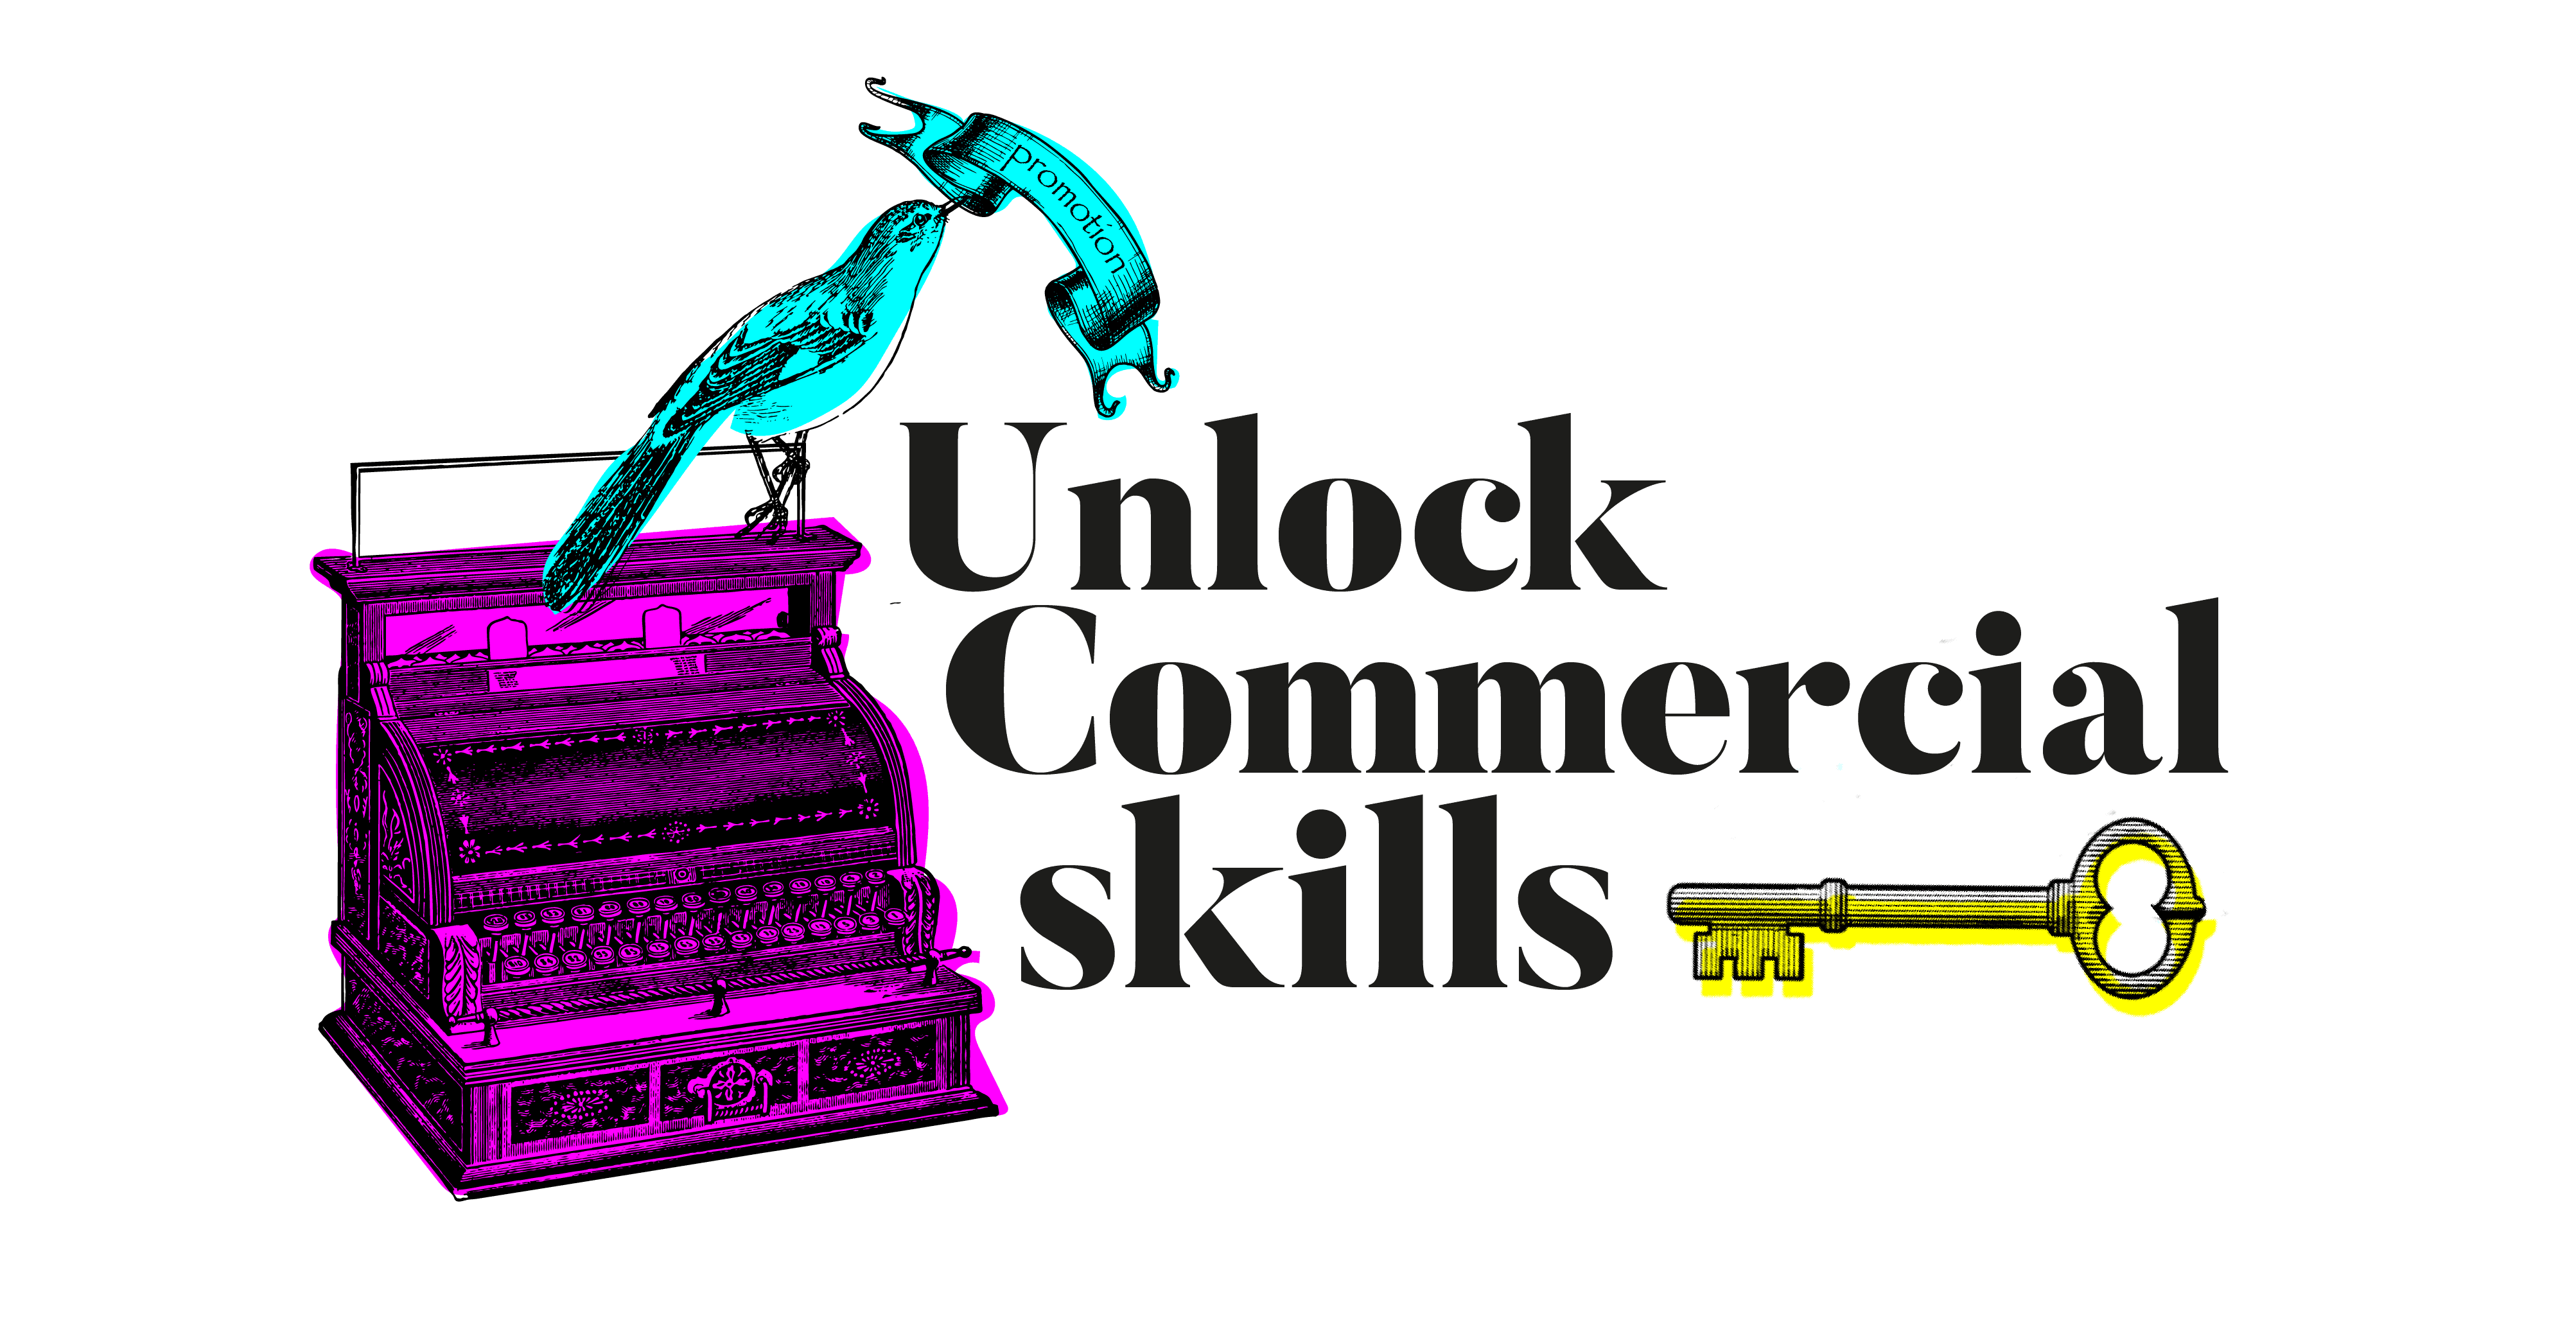 unlock commercial skills